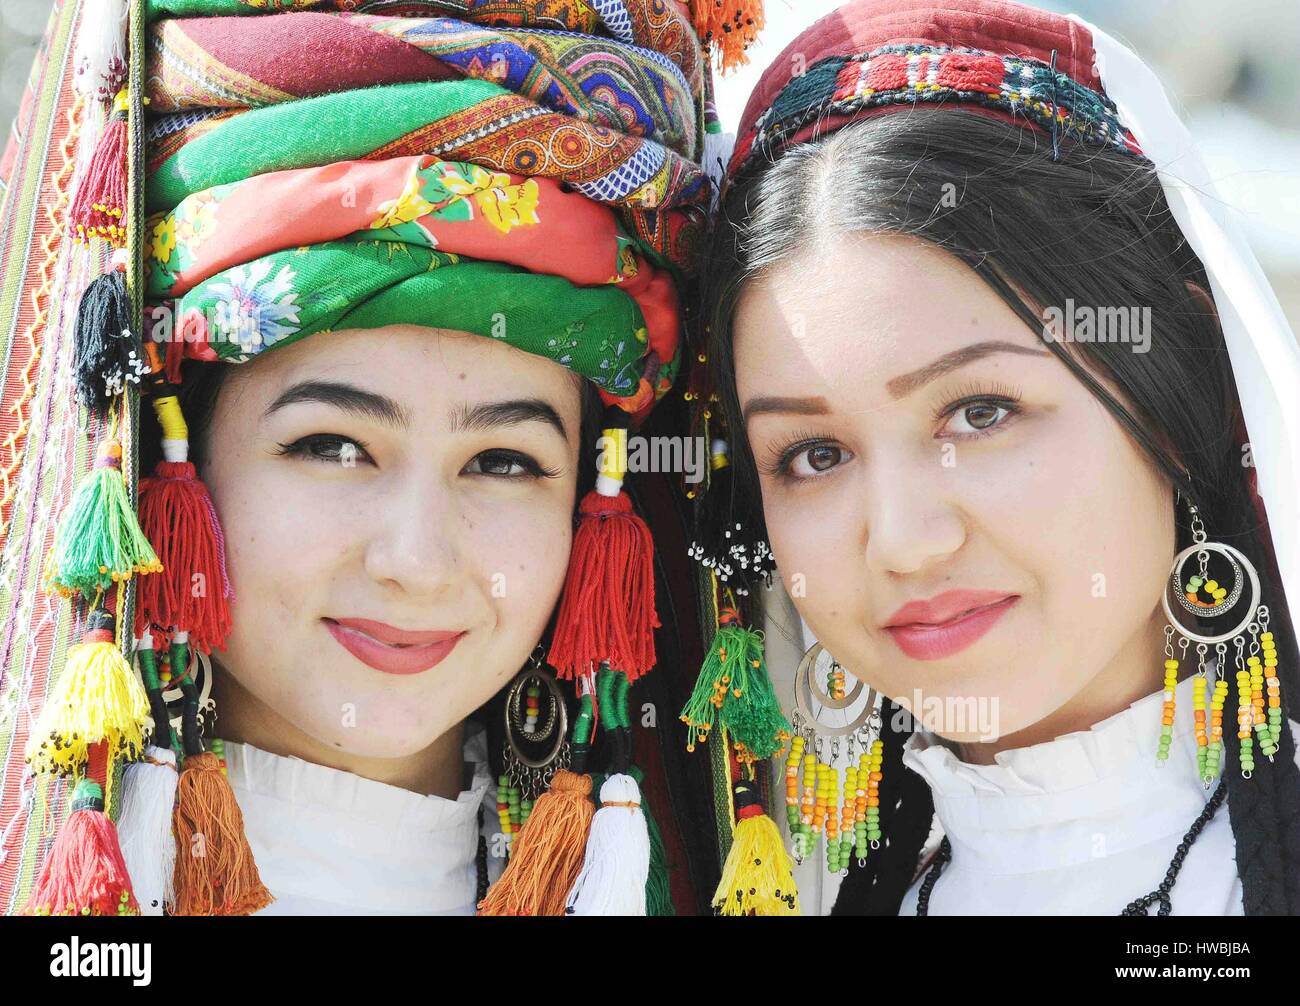 Таджикский и узбекский языки. Узбекские женщины. Узбекистан народ. Узбекистан люди внешность. Узбечки и таджички.